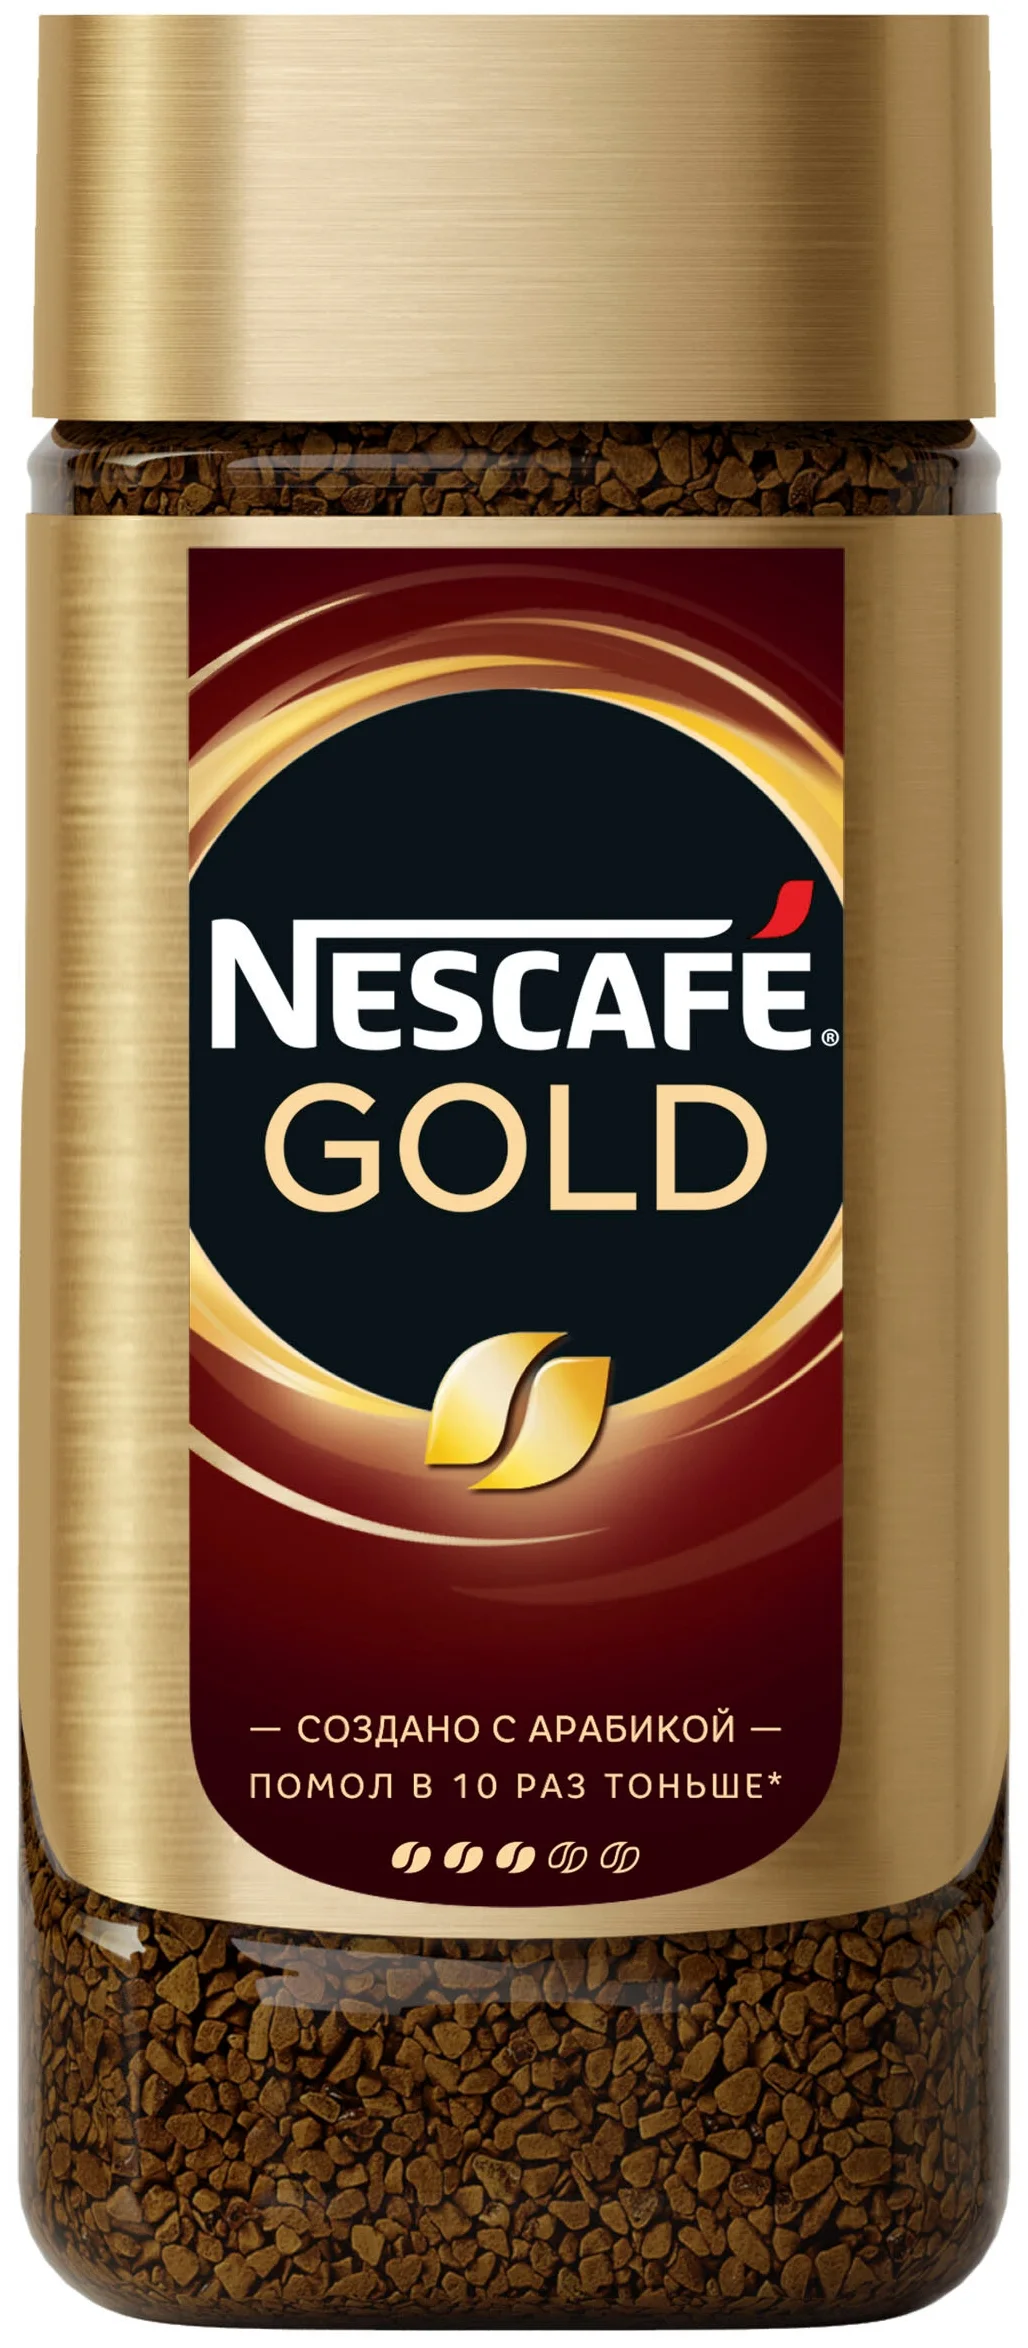 Nescafe Gold, стеклянная банка - упаковка: стеклянная банка